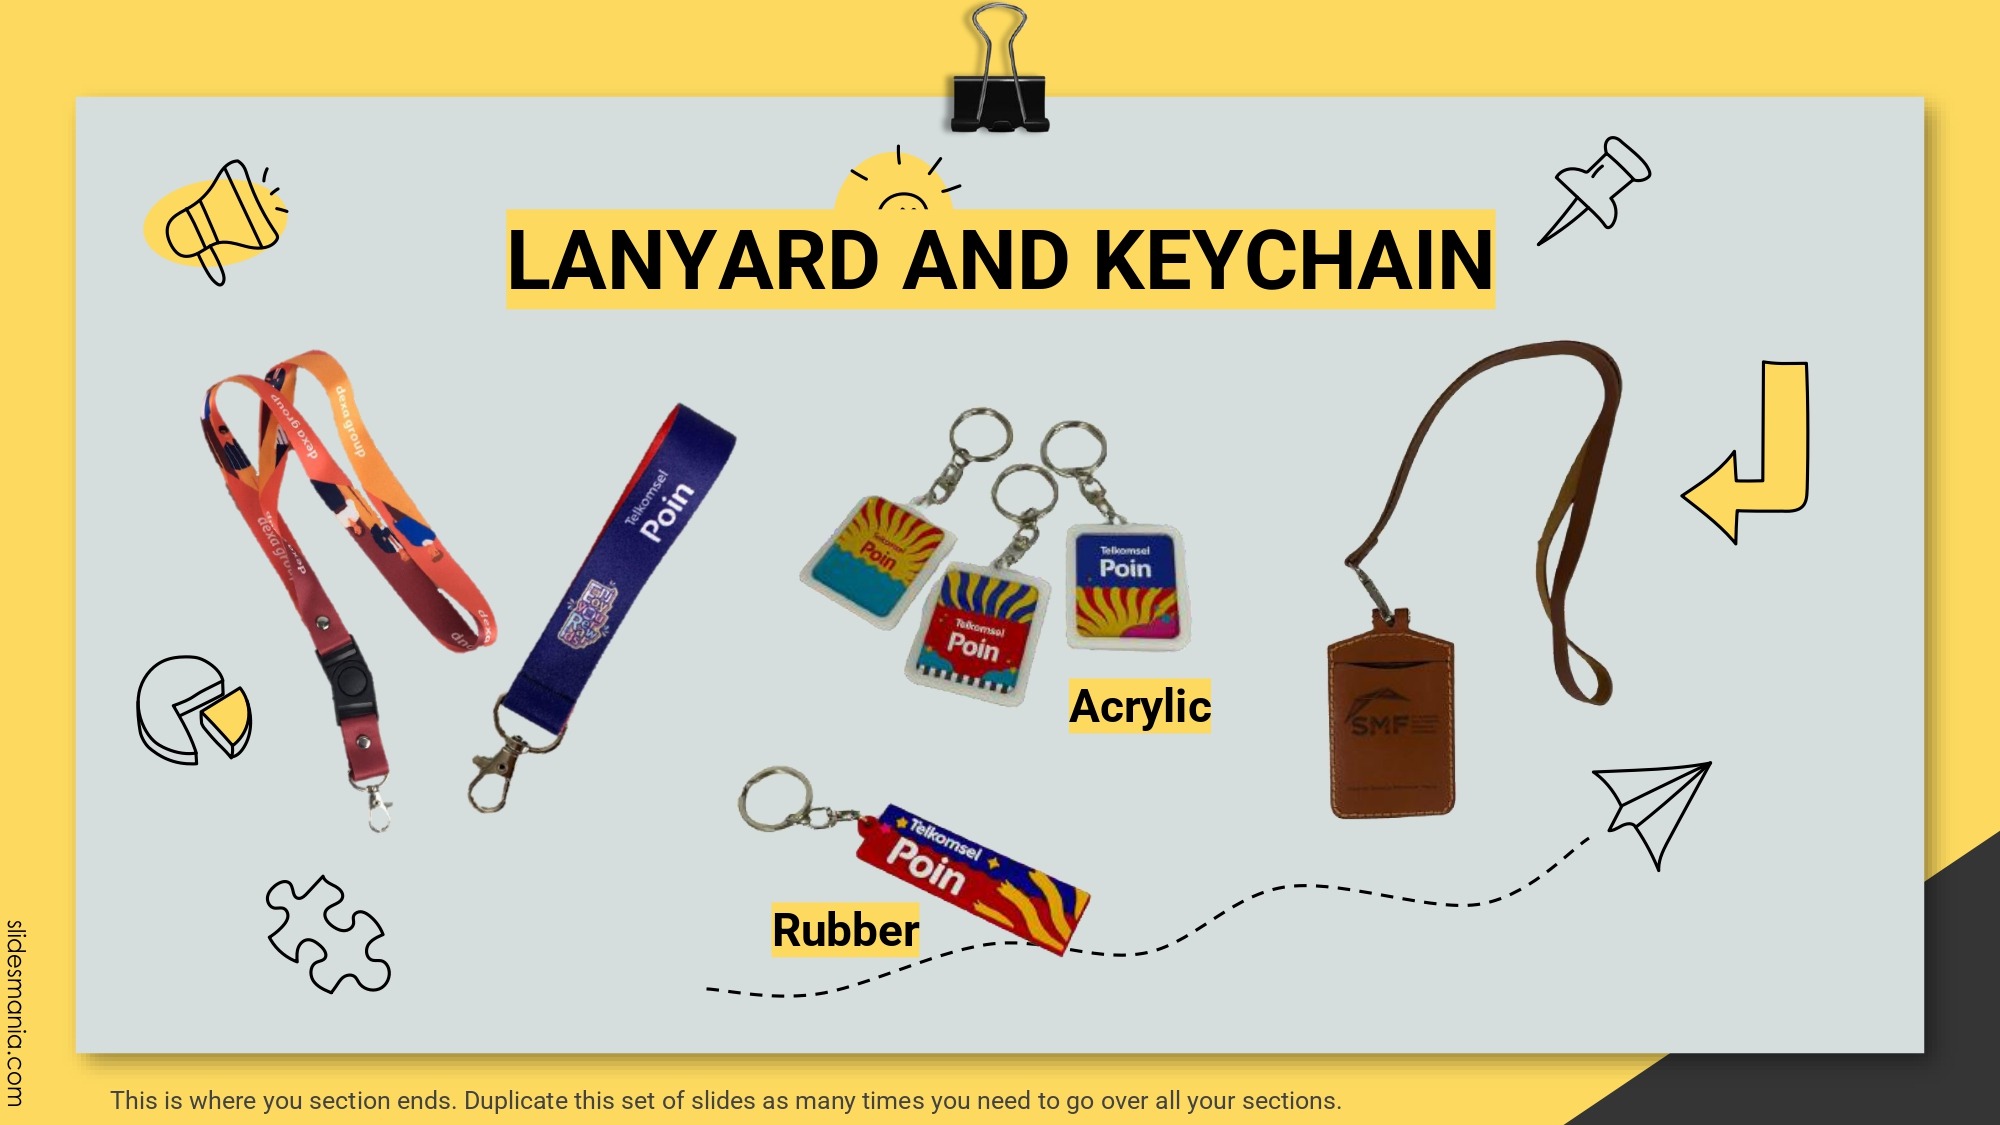 gambar souvenir lanyard keychain